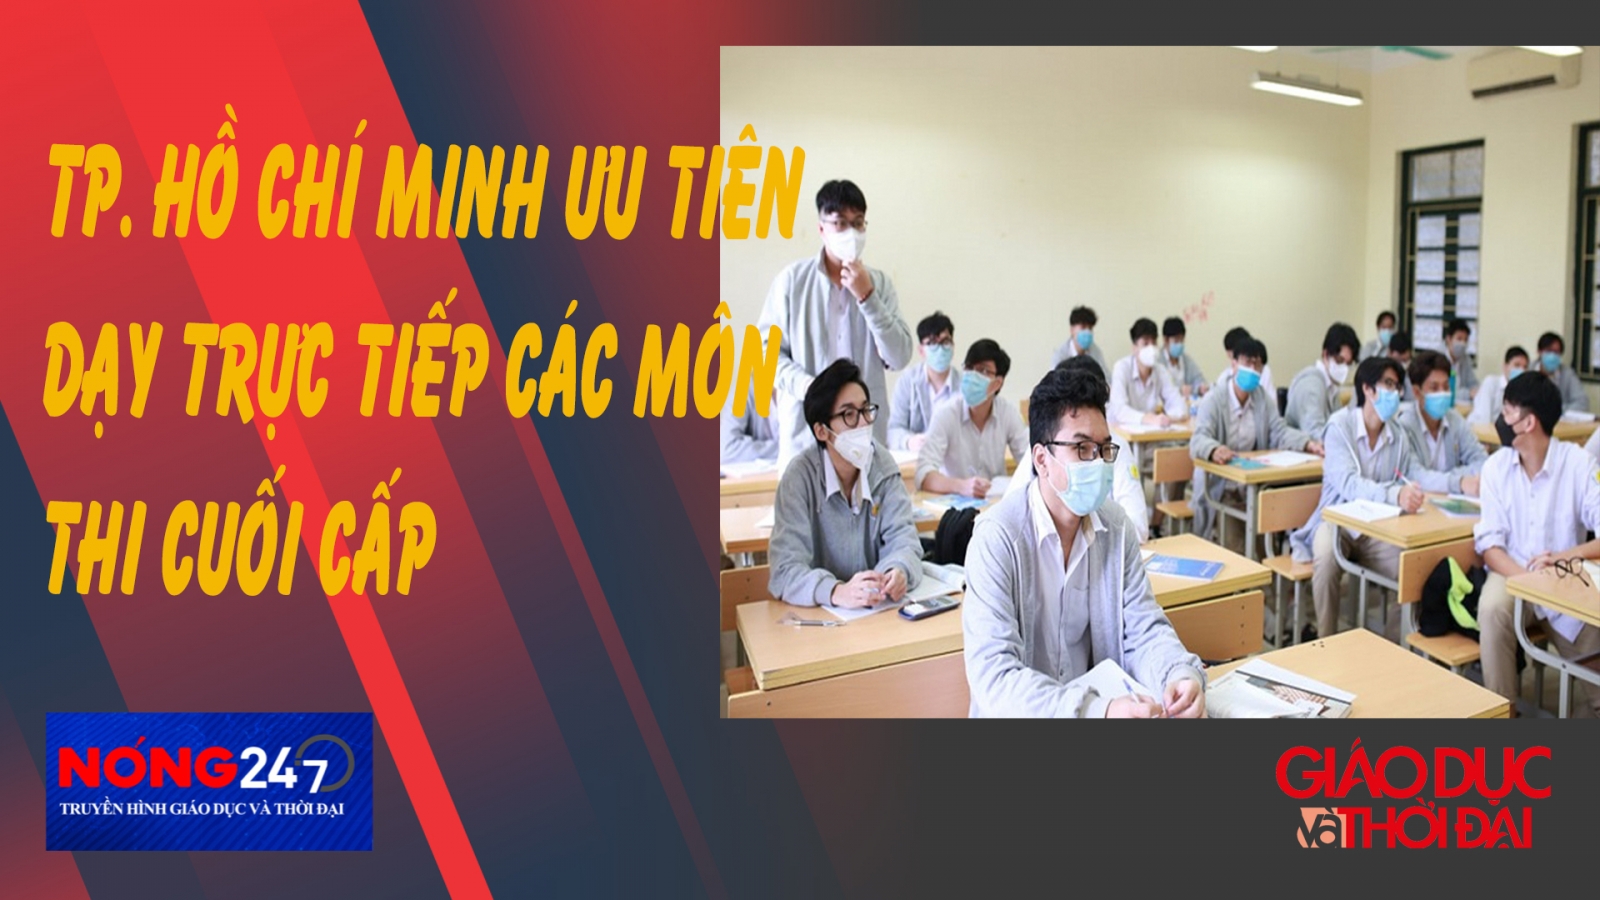 NÓNG 247 | TP. Hồ Chí Minh ưu tiên dạy trực tiếp các môn thi cuối cấp